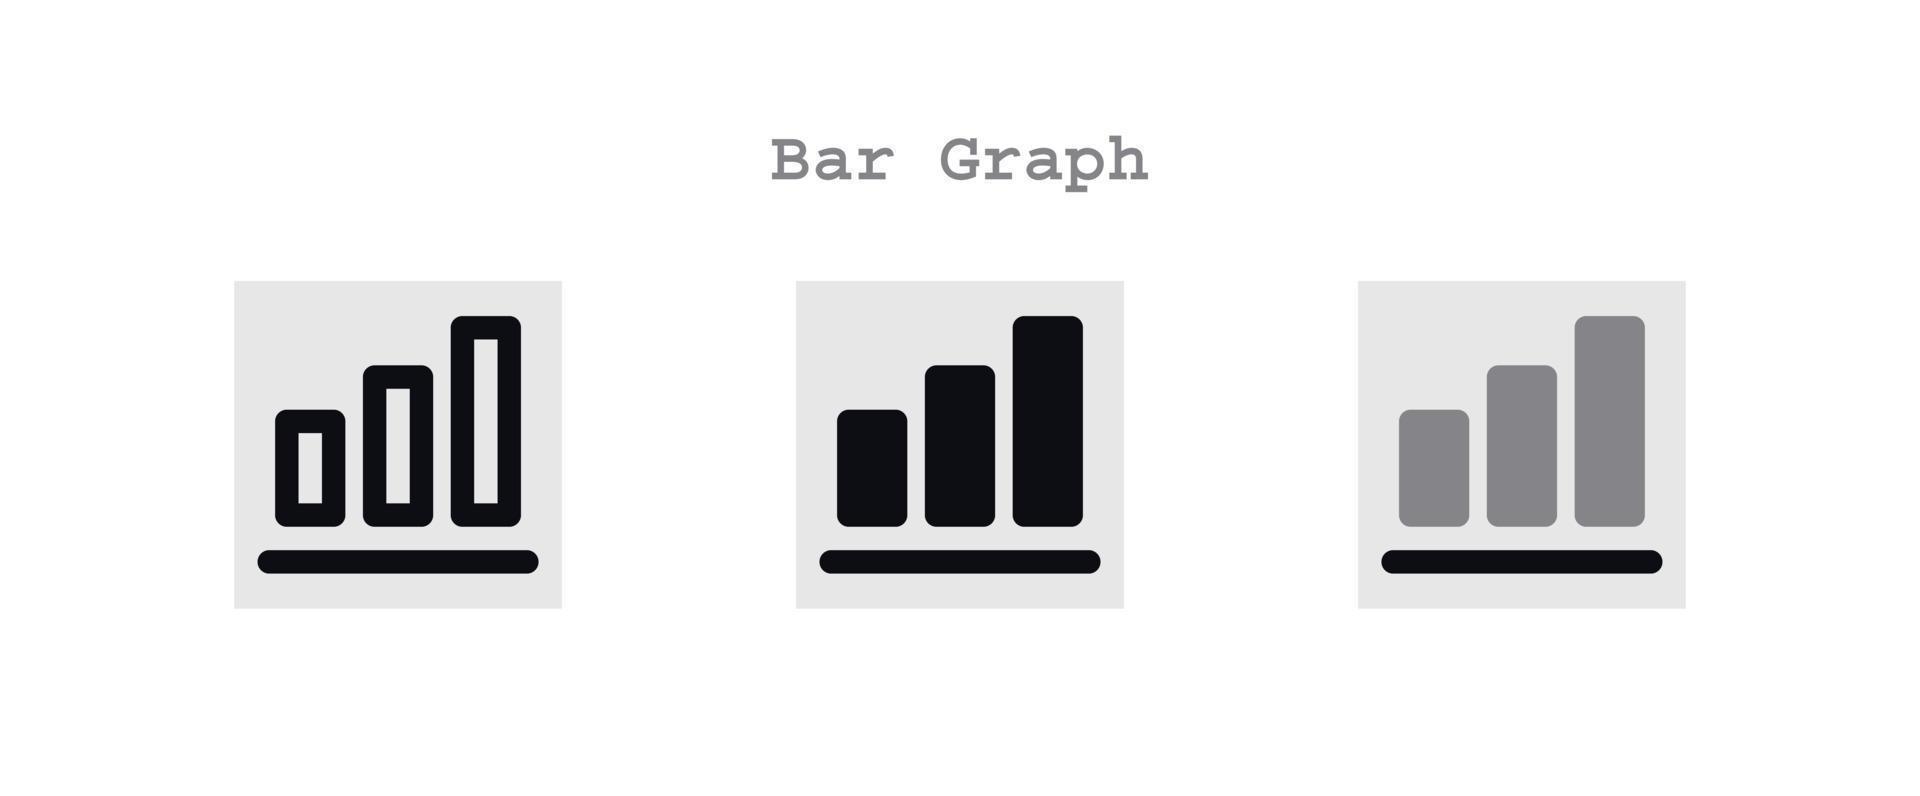 bar grafico icono conjunto vector